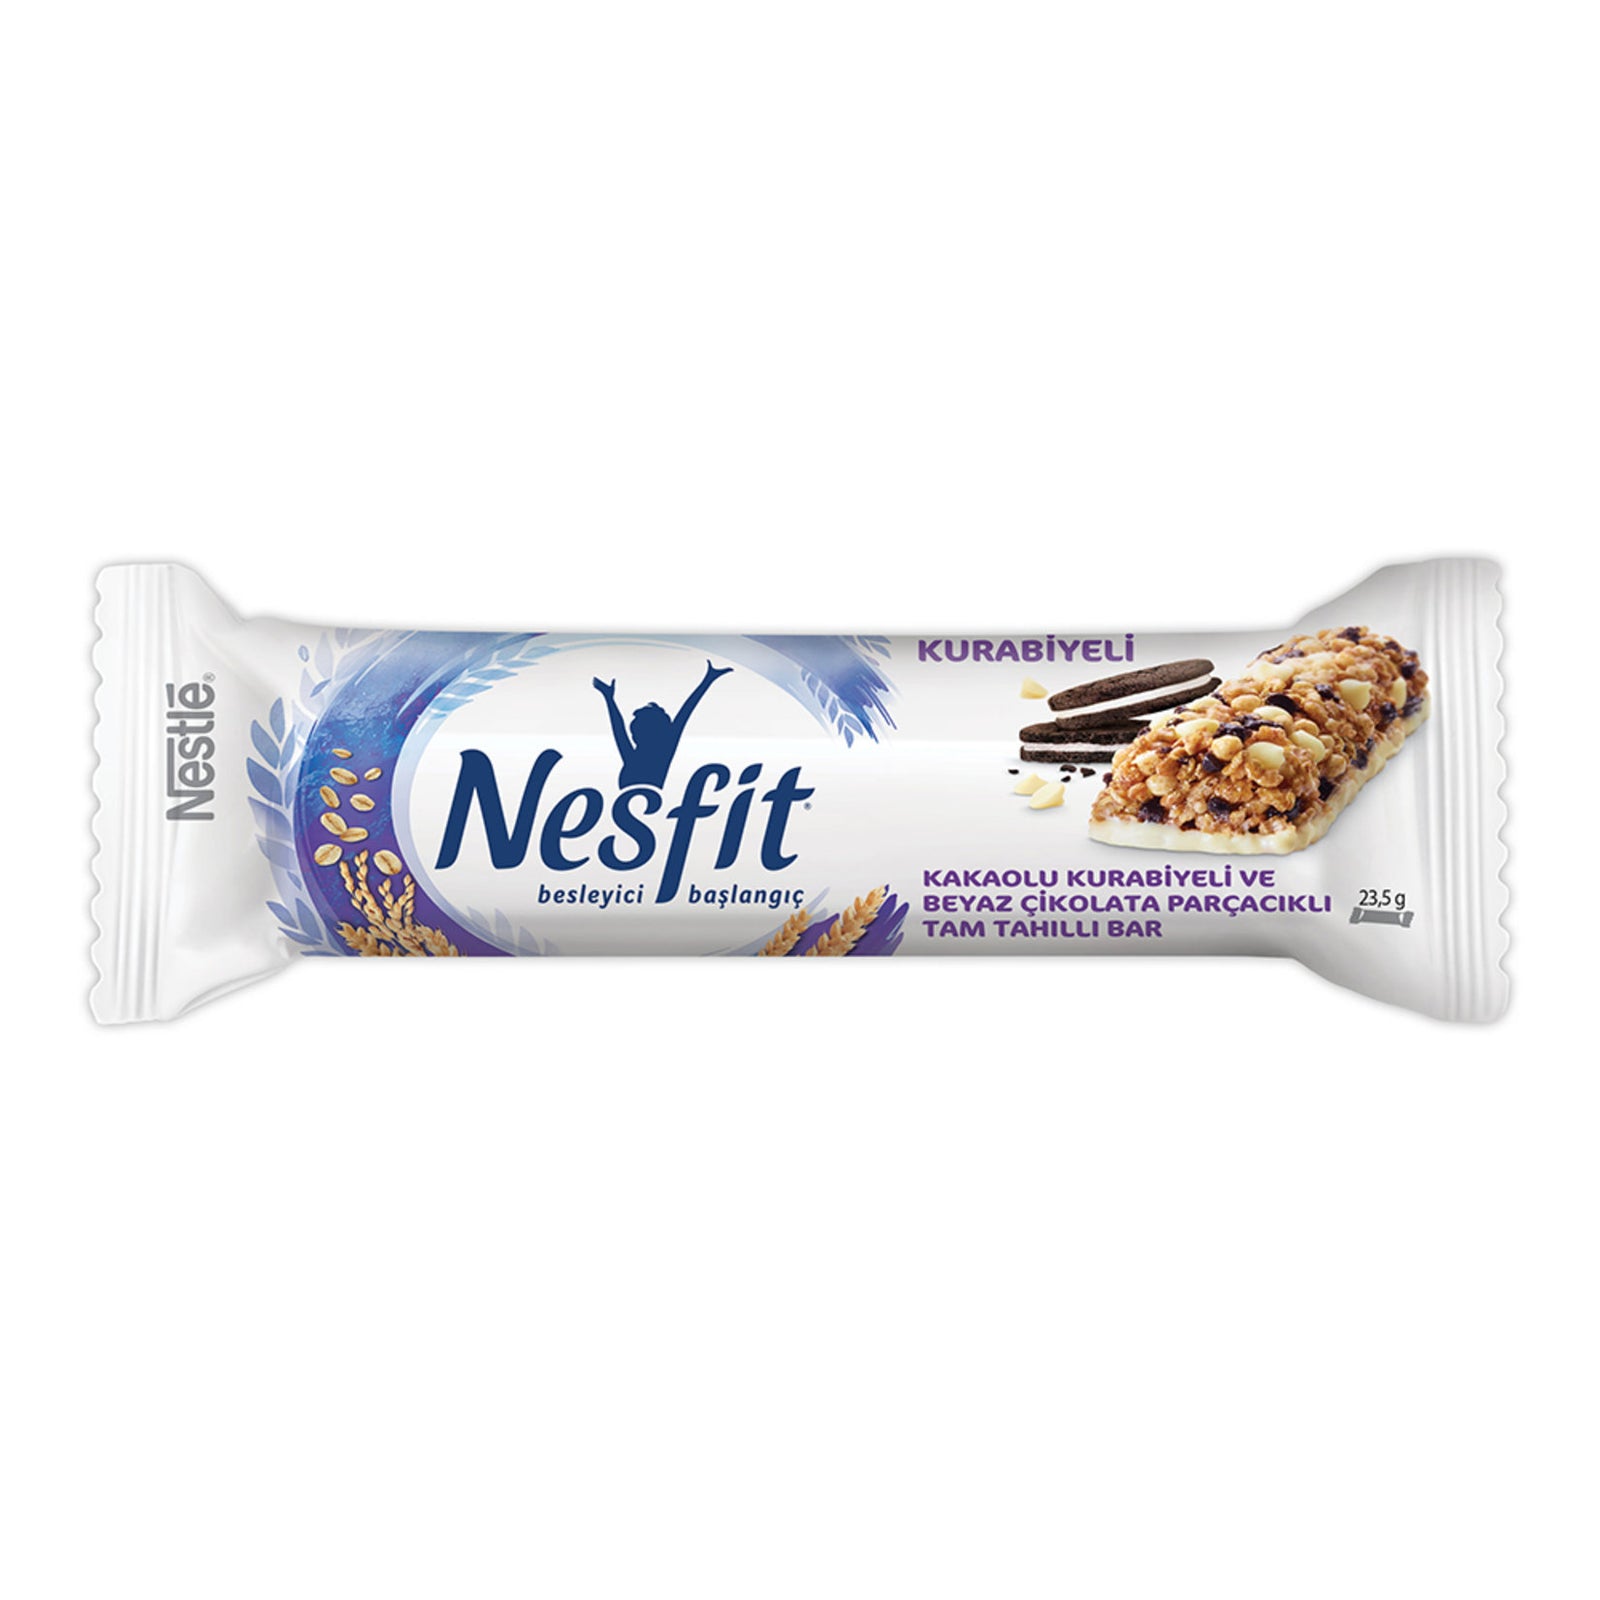 Nestle Nesfit Chocolate Cookie and White Chocolate Granola Bar (Kurabi